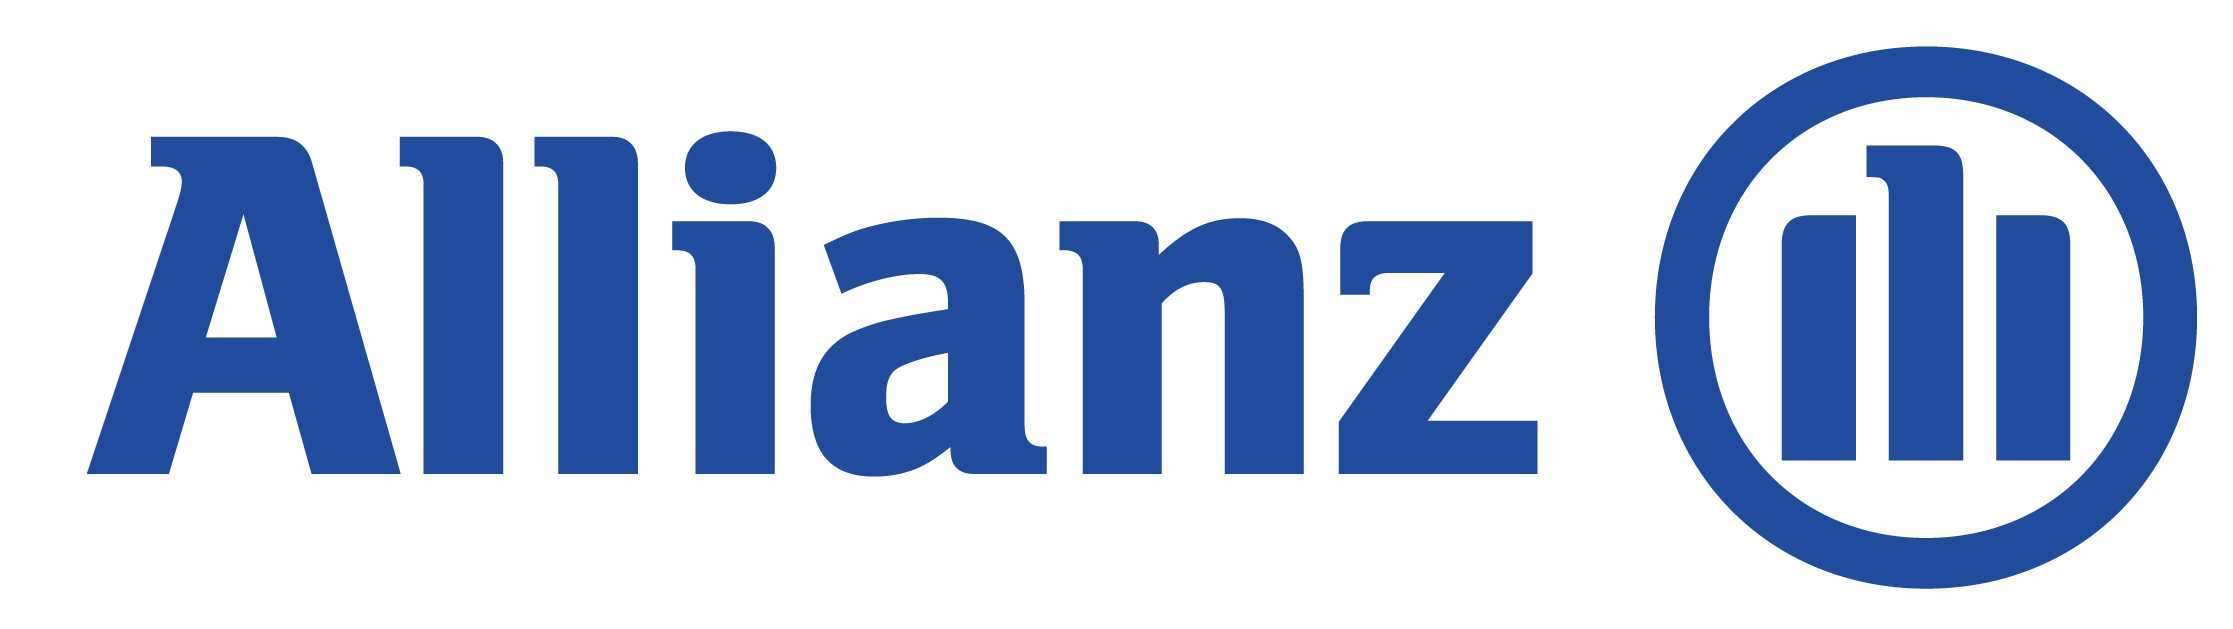 Allianz logo HIGH RES